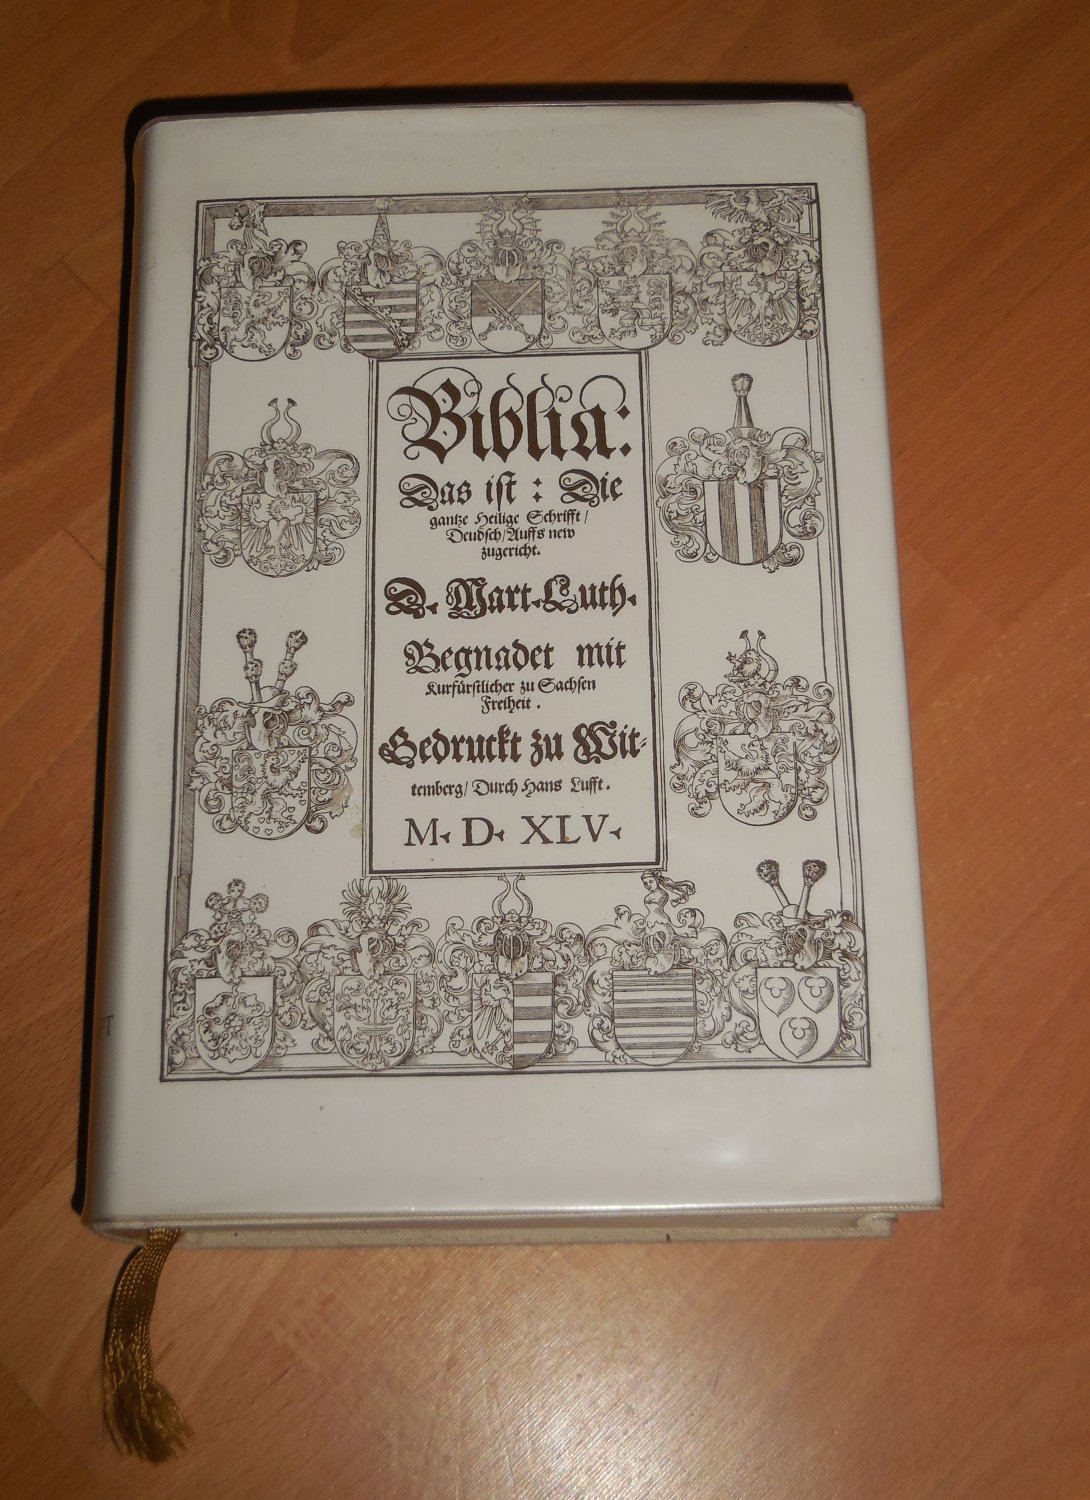 Biblia Germanica 1545.“ (Martin Luther ) – Buch gebraucht kaufen